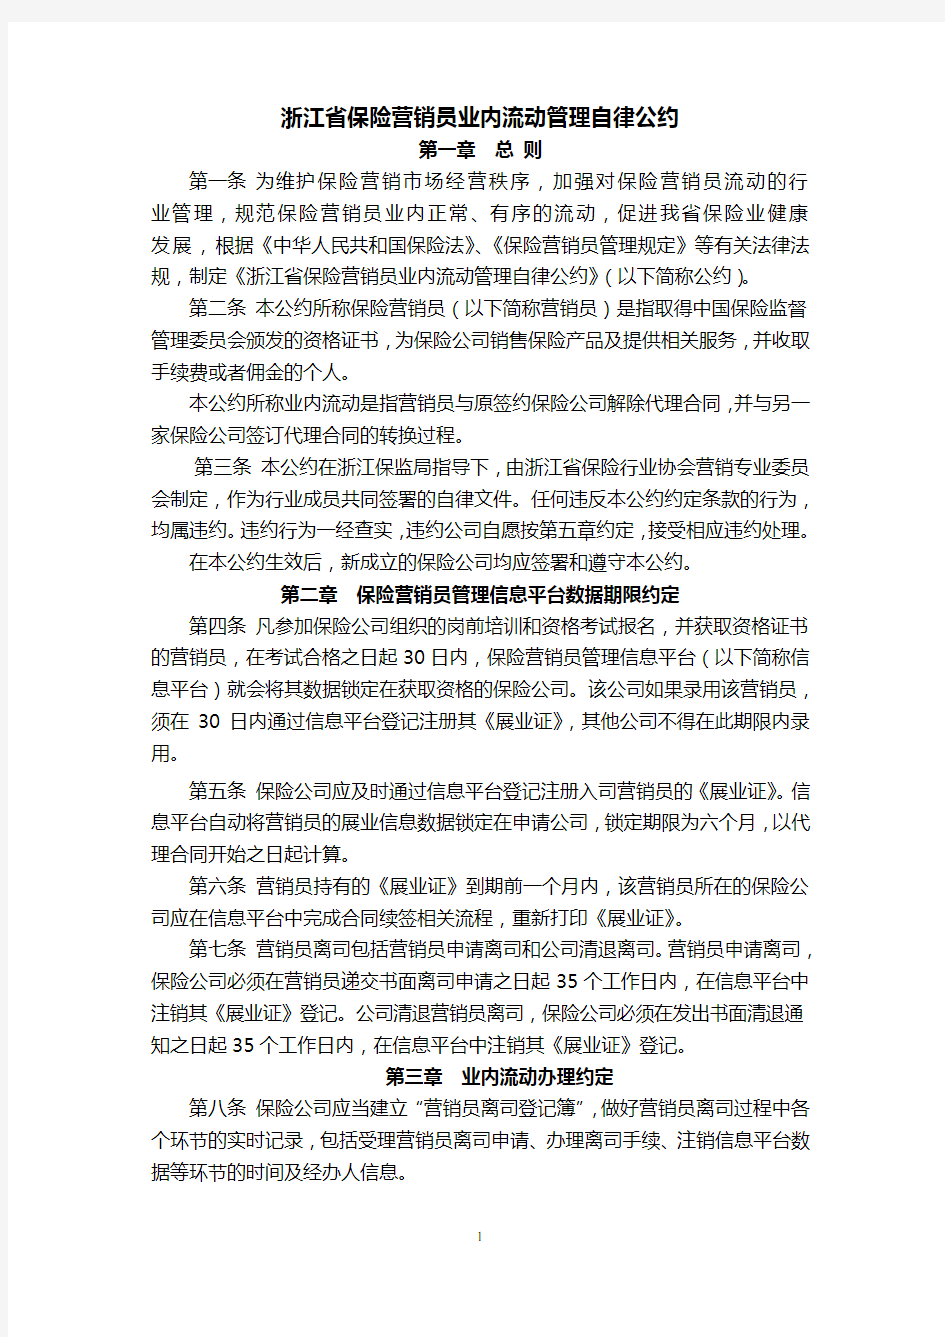 浙江省保险营销员业内流动管理自律公约7页